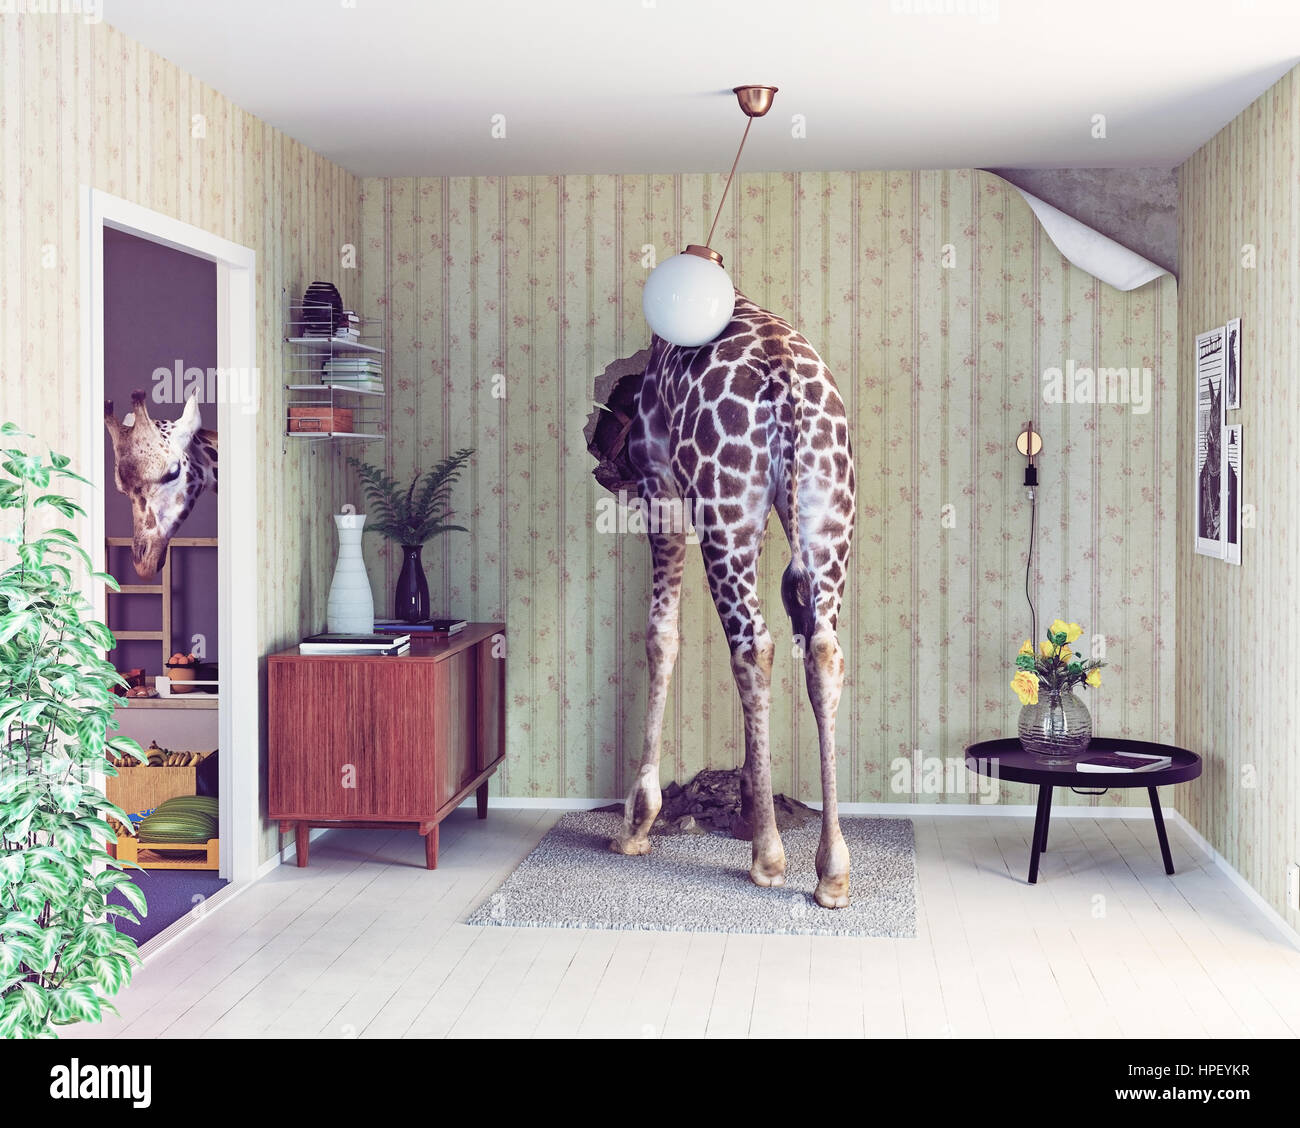 La giraffa nel soggiorno. concetto creativo. Foto cg e combinazione di elementi Foto Stock